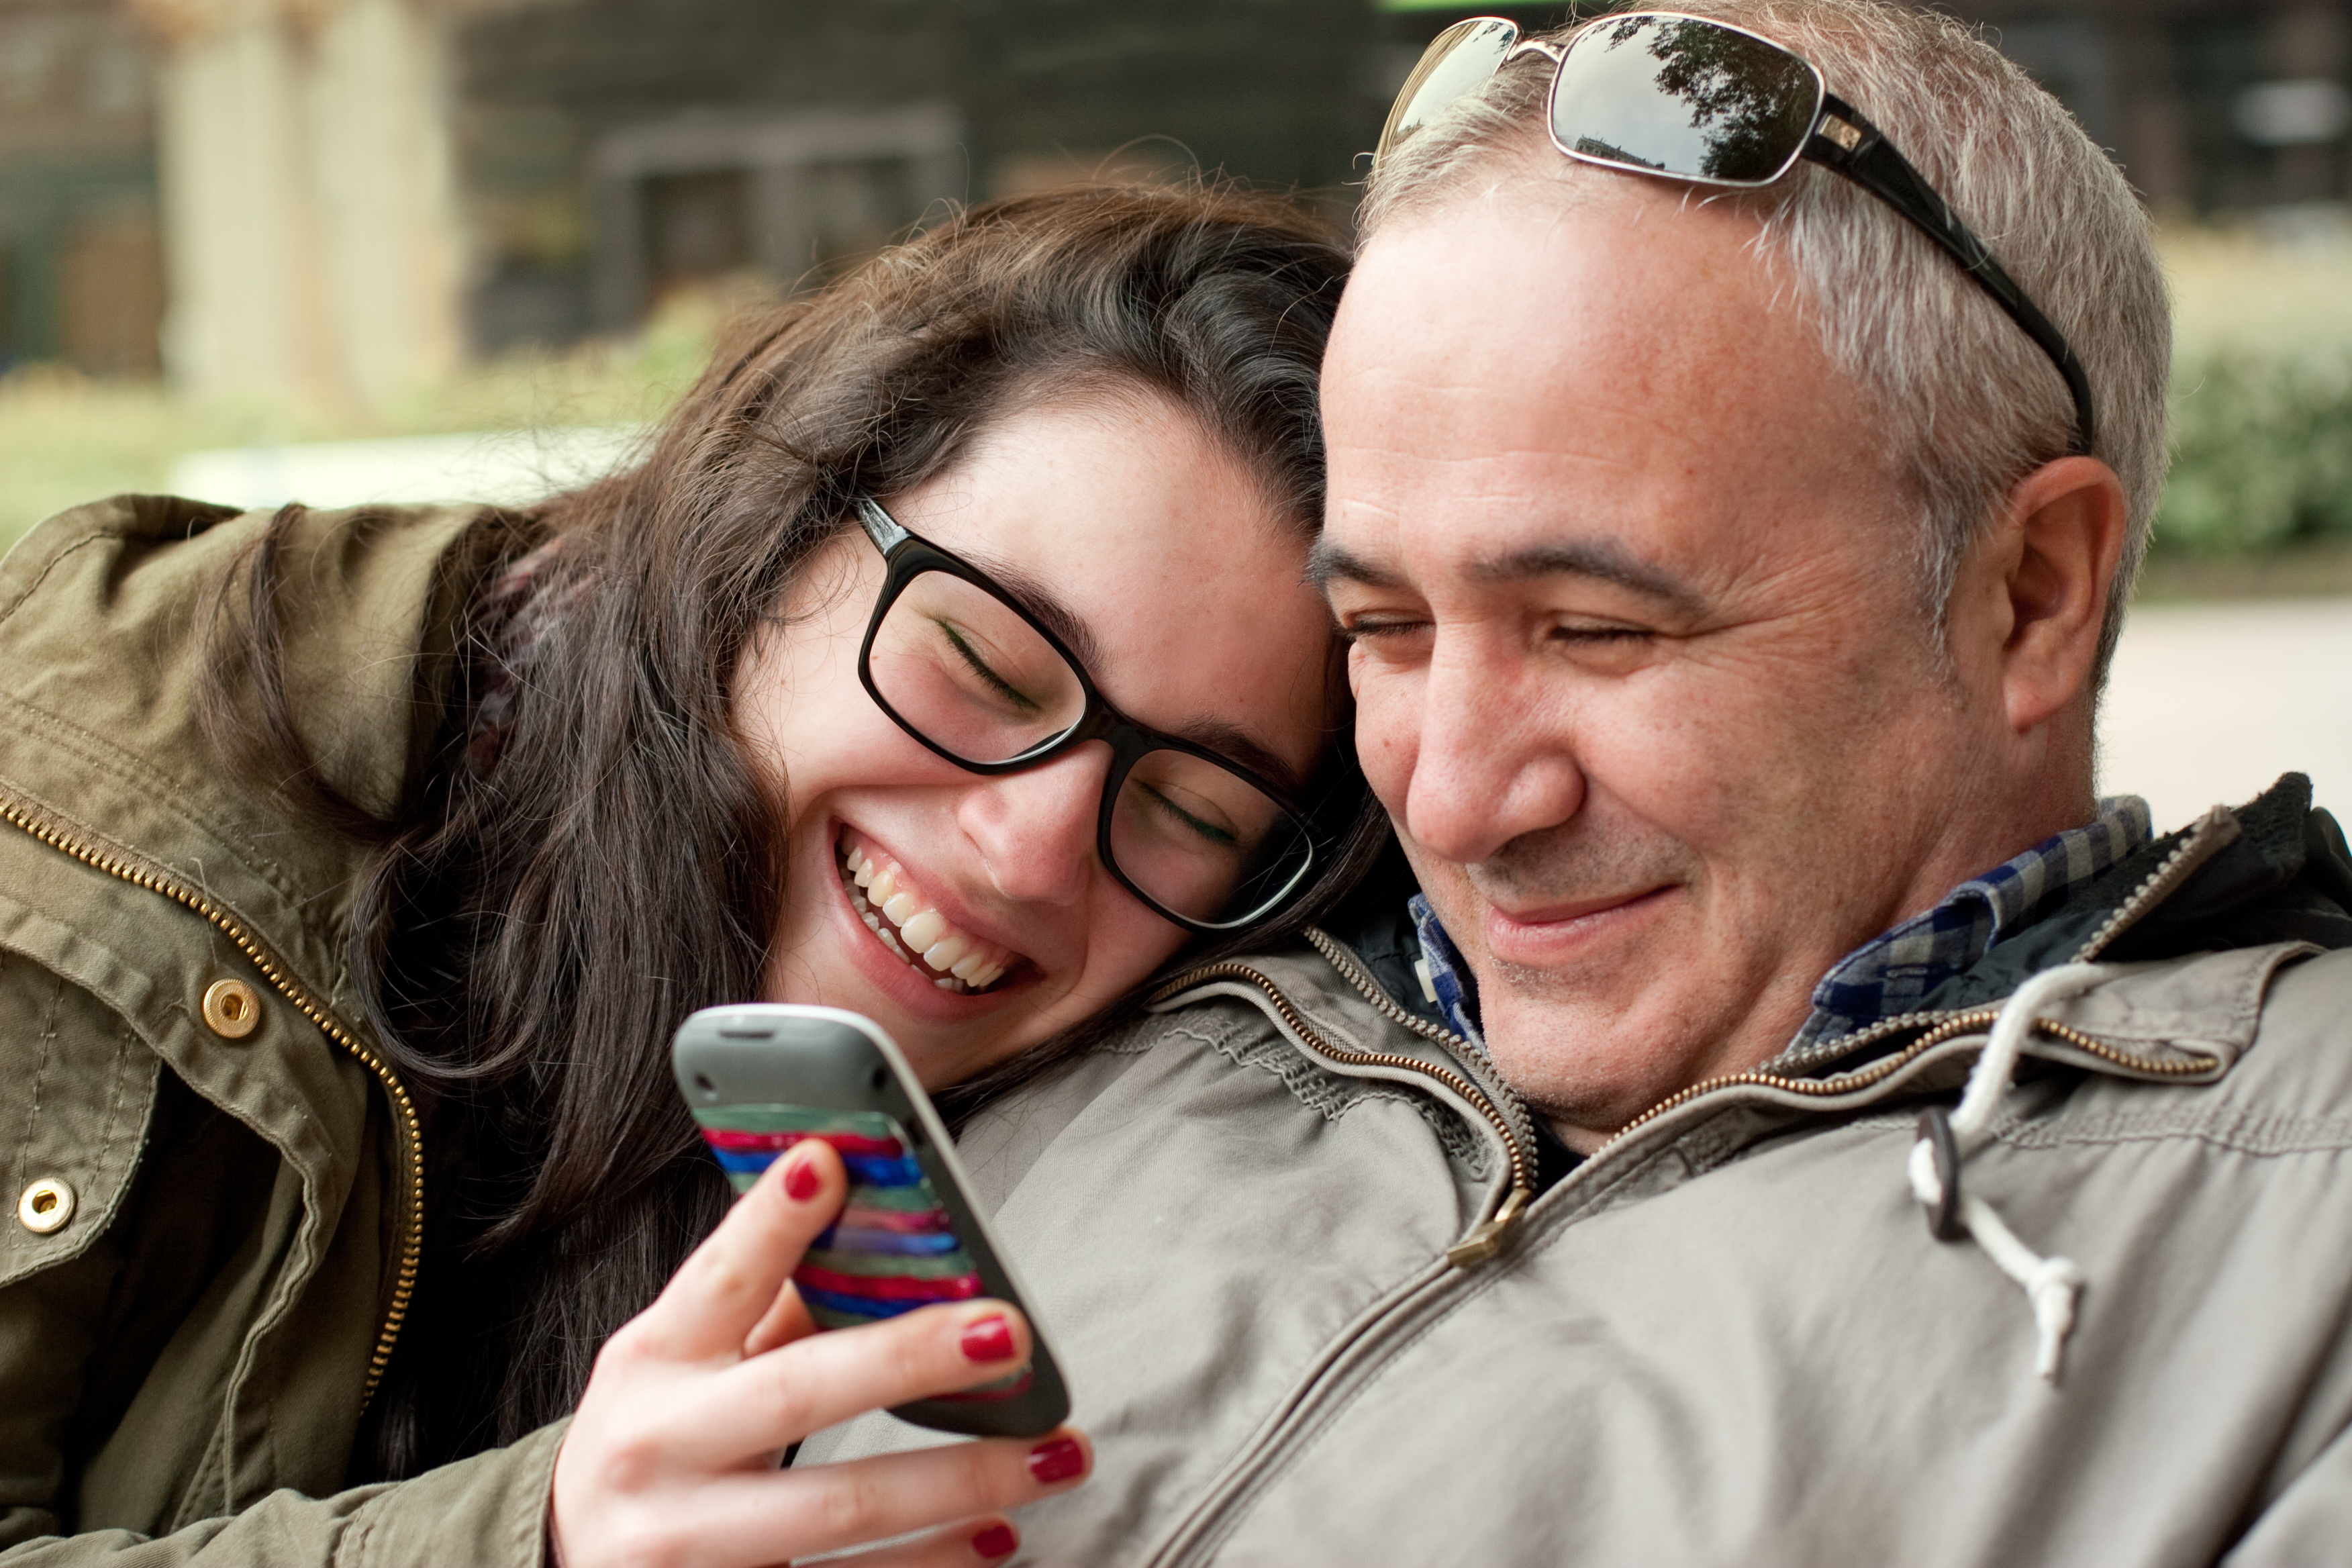 Ein Mann bindet sich an seine Tochter, während er auf ihr Telefon schaut | Quelle: Shutterstock